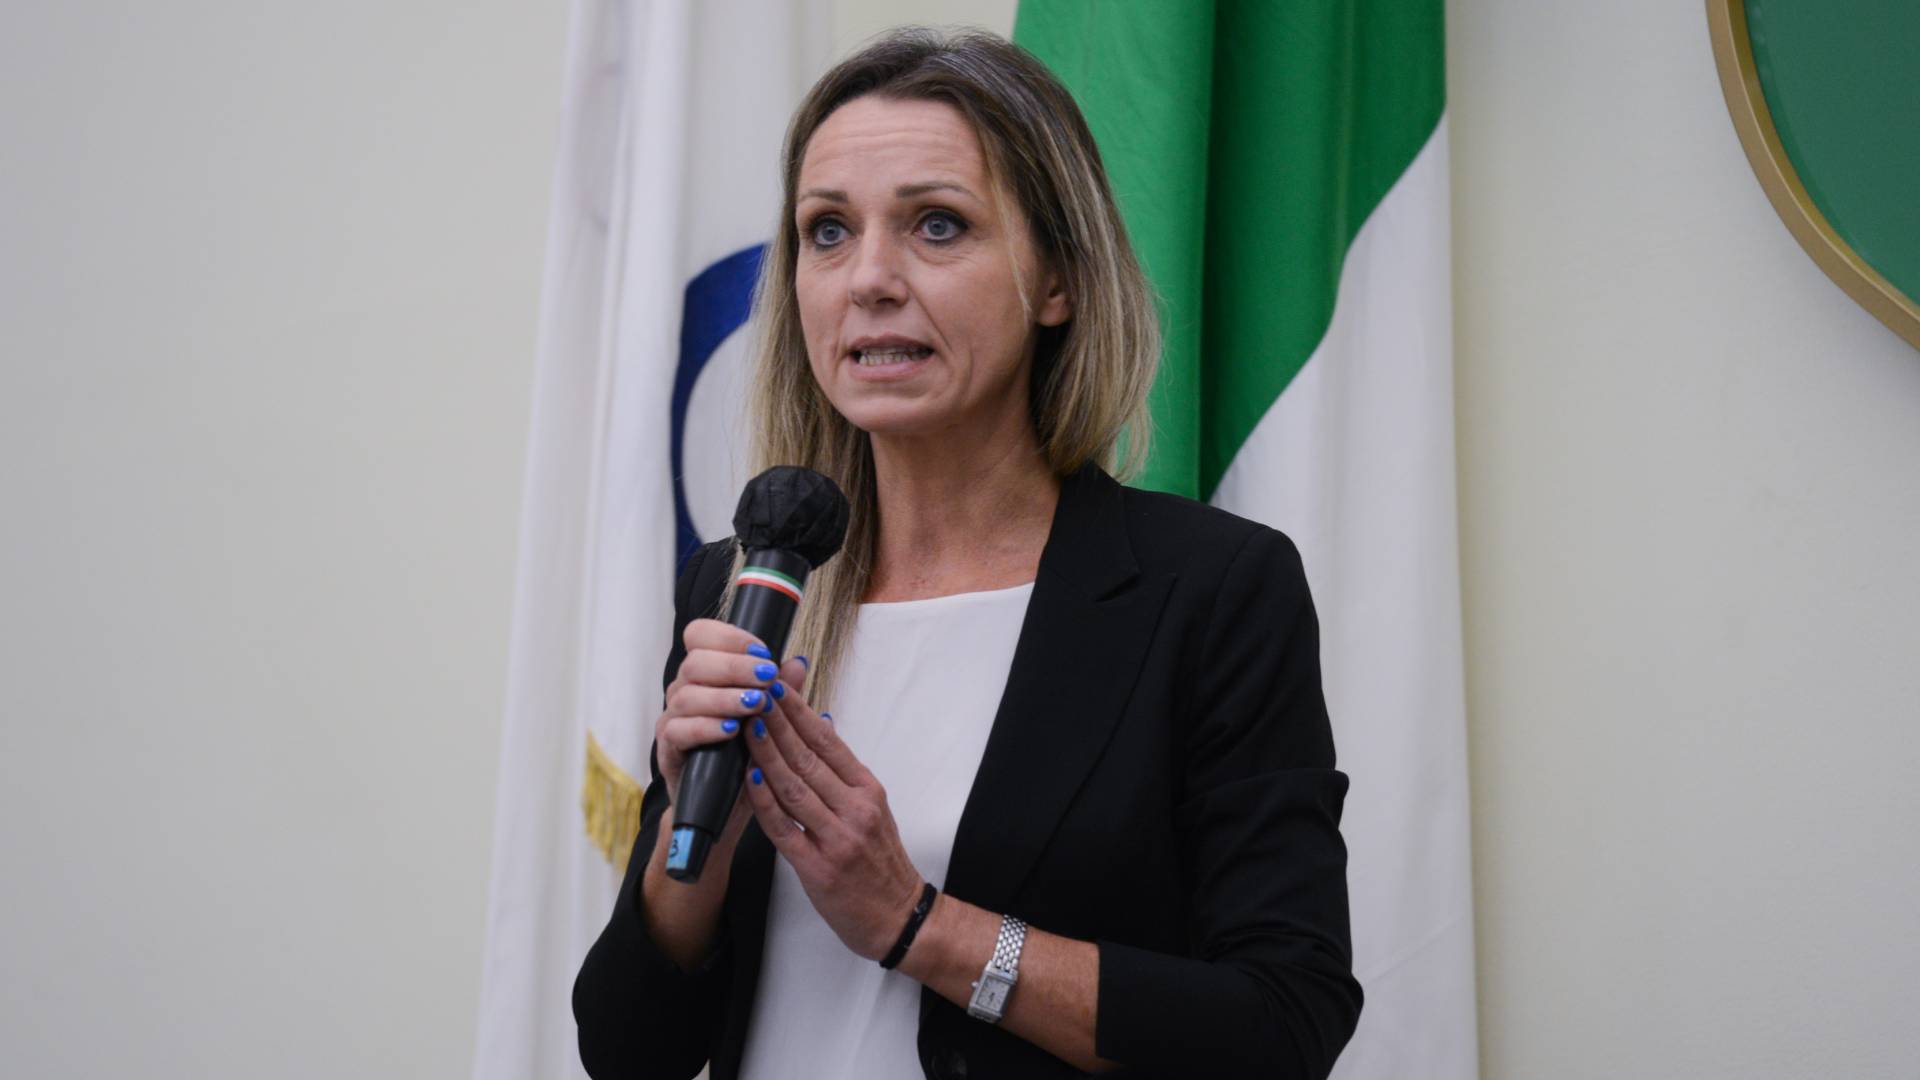 Serie A, parla Valentina Vezzali: “Valutiamo cabina di regia”